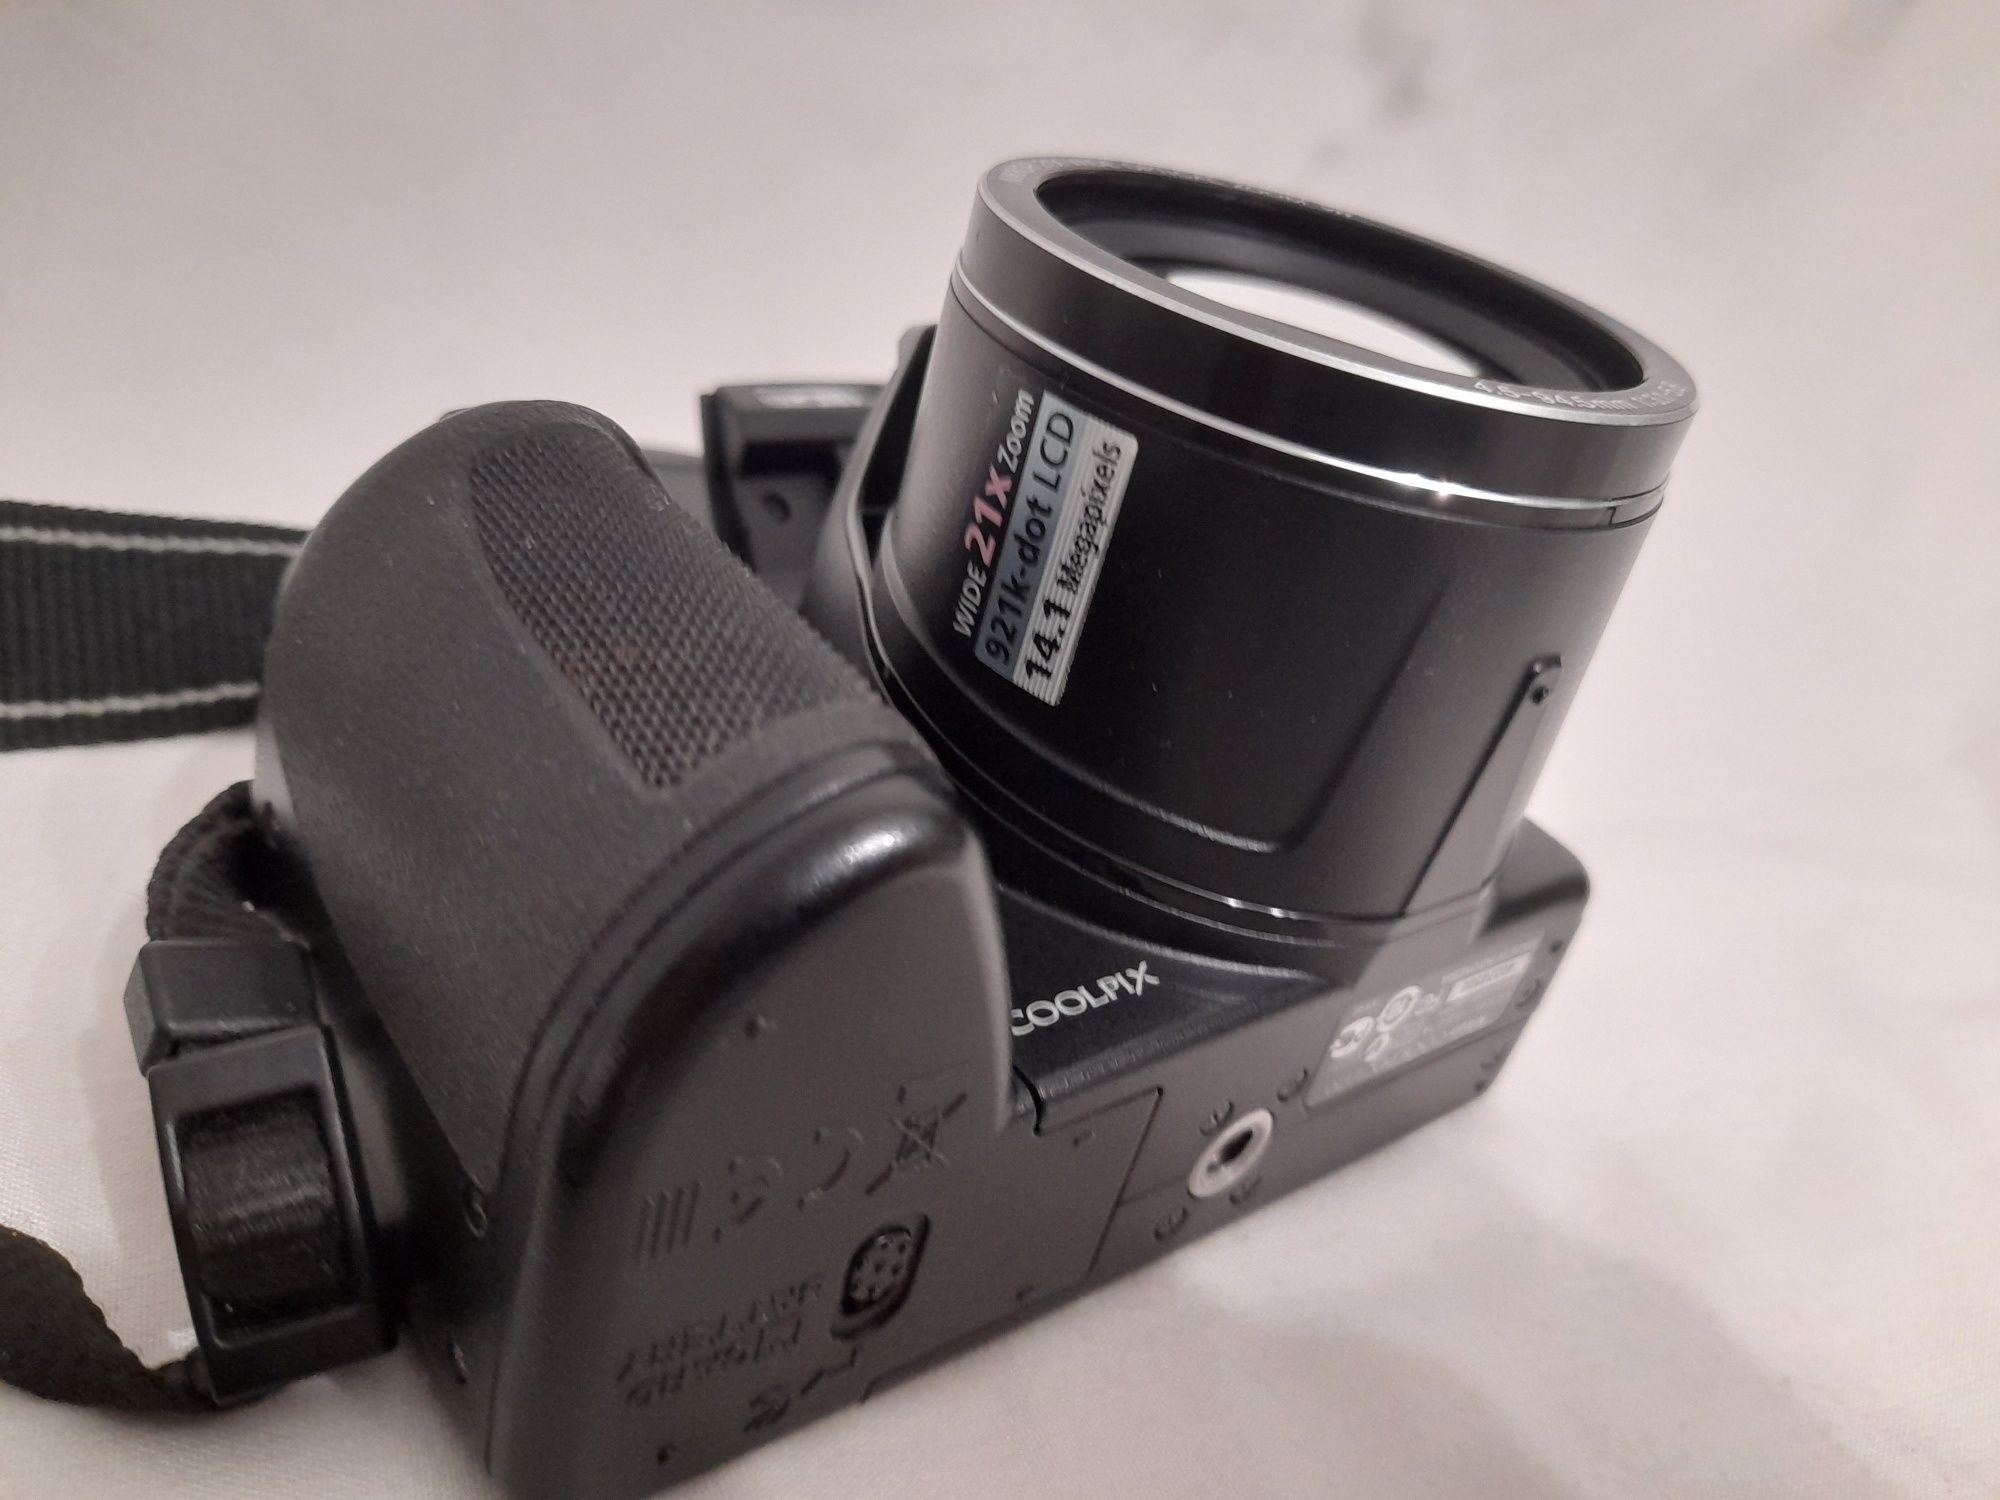 Nikon coolpix L120  s30 canon sx 120 is